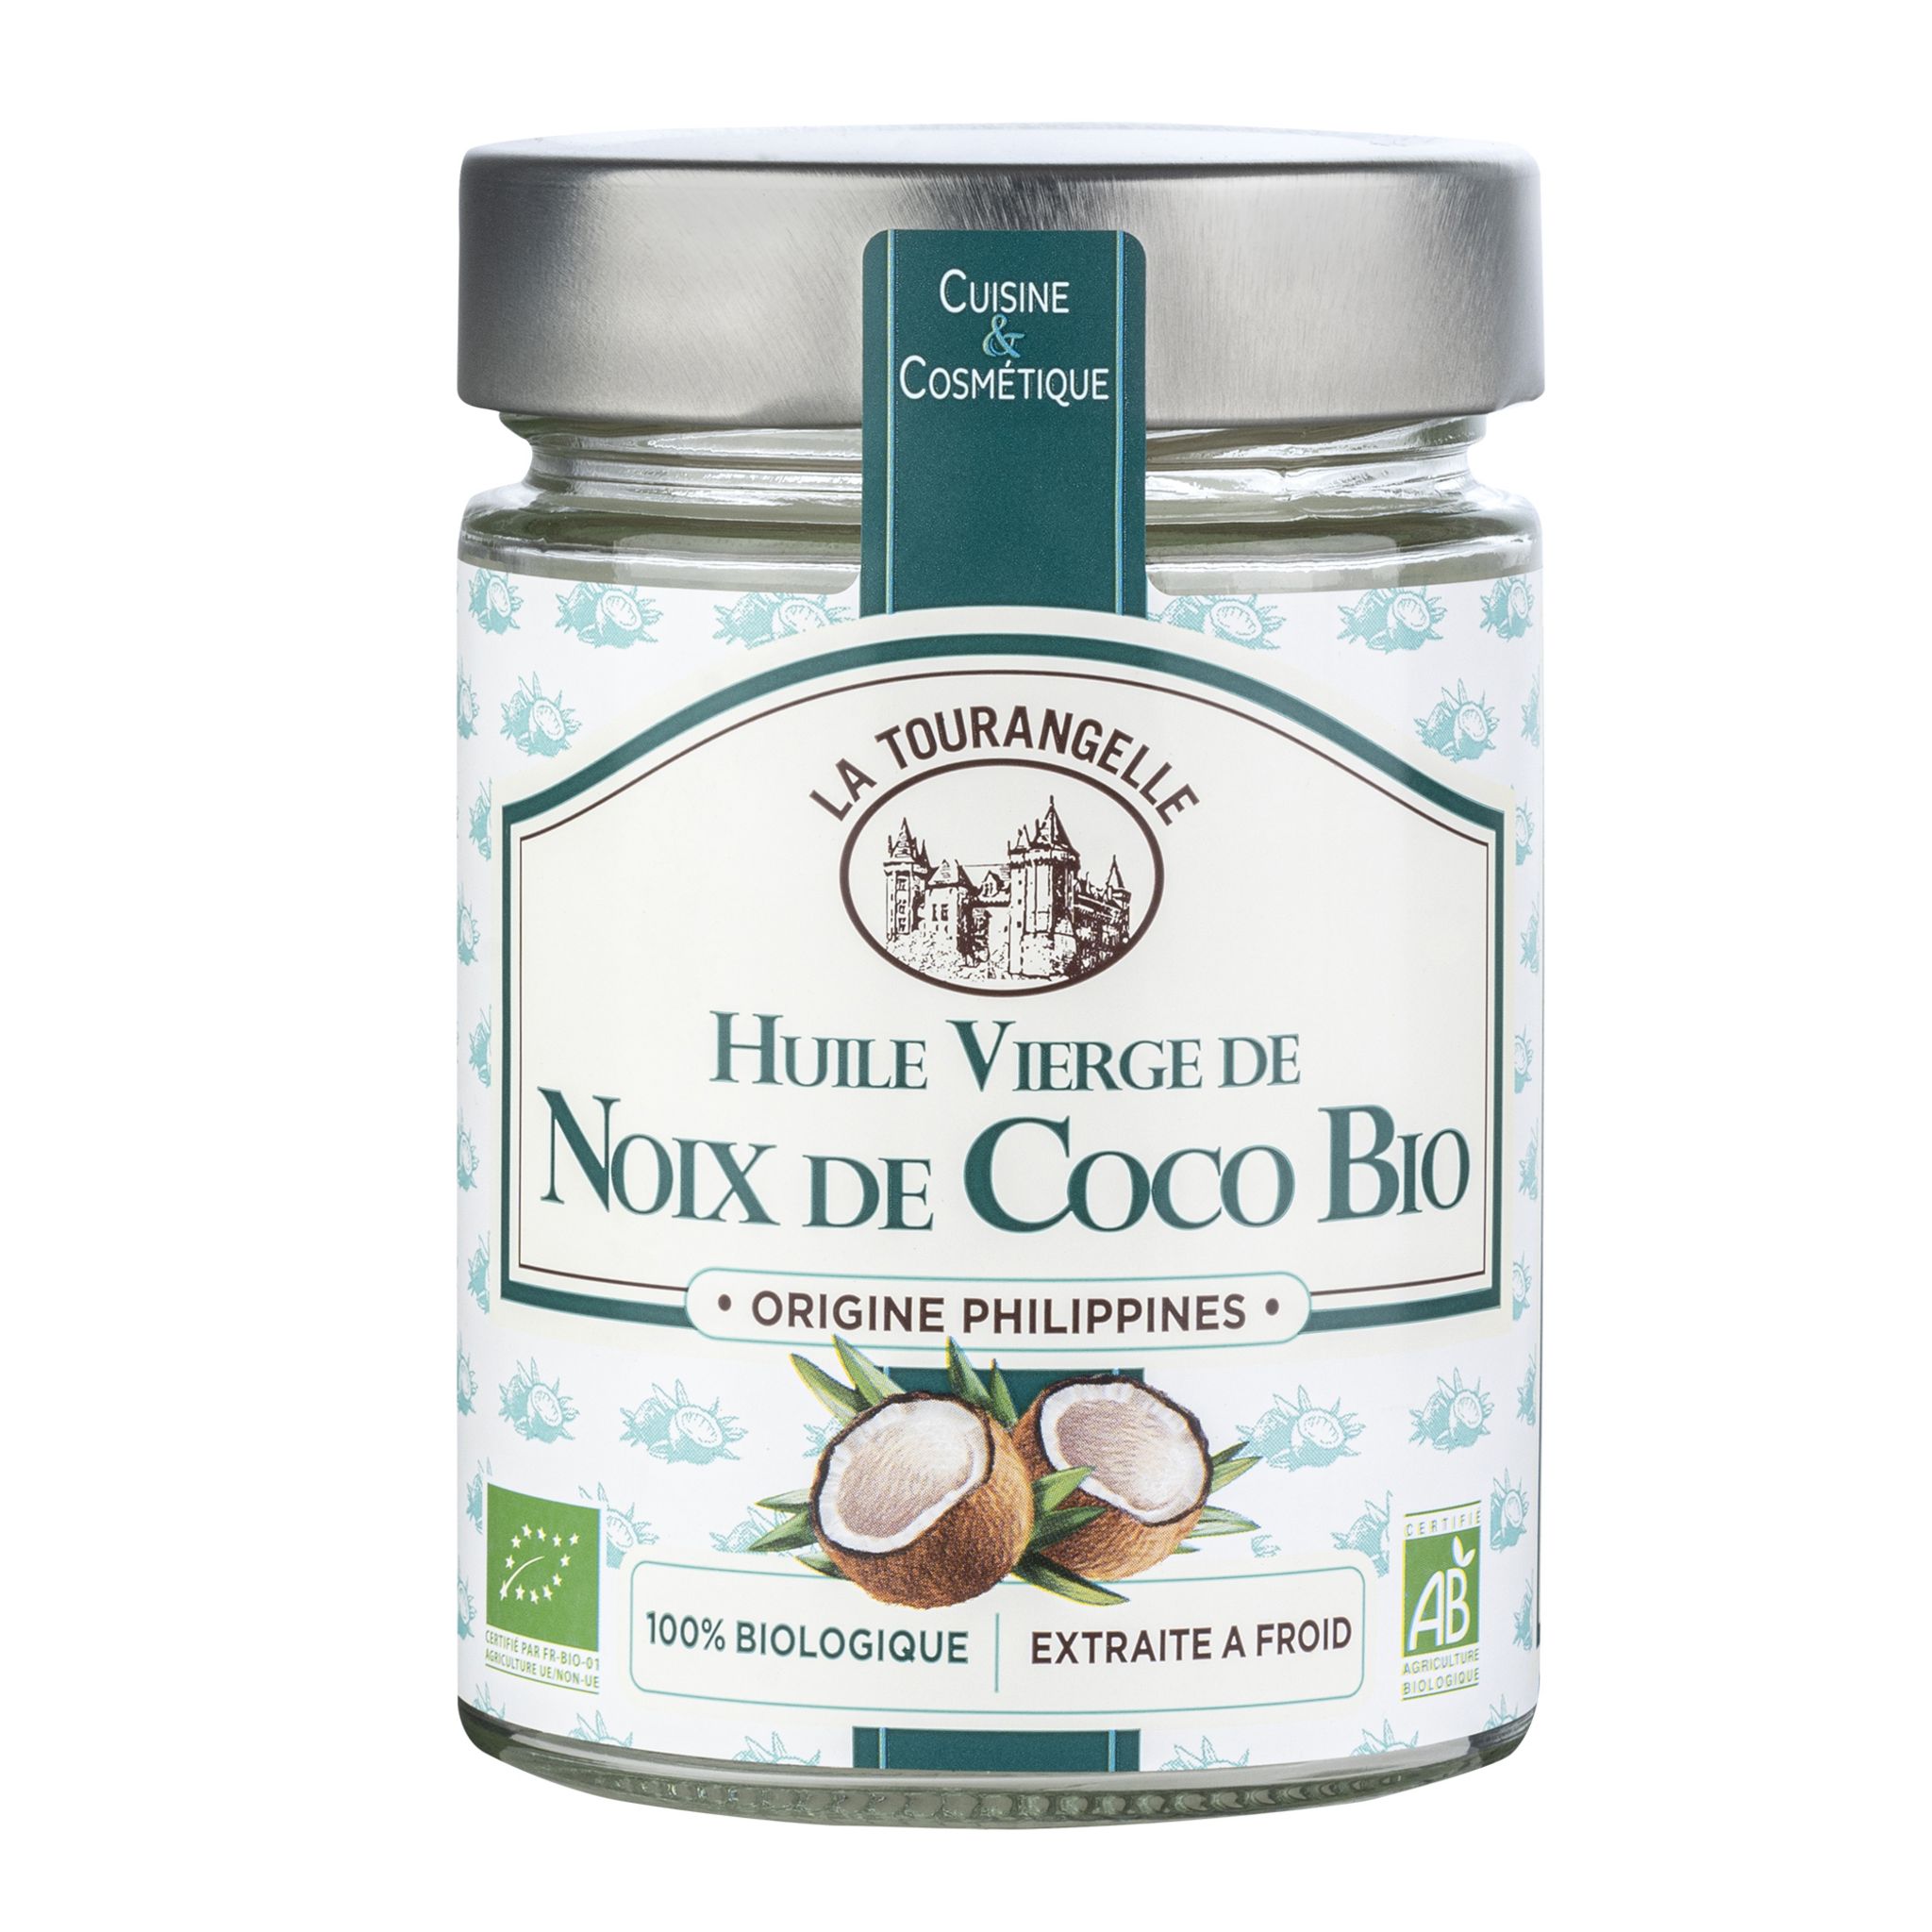 Huile Végétale De Coco Bio cosmétique et alimentaire